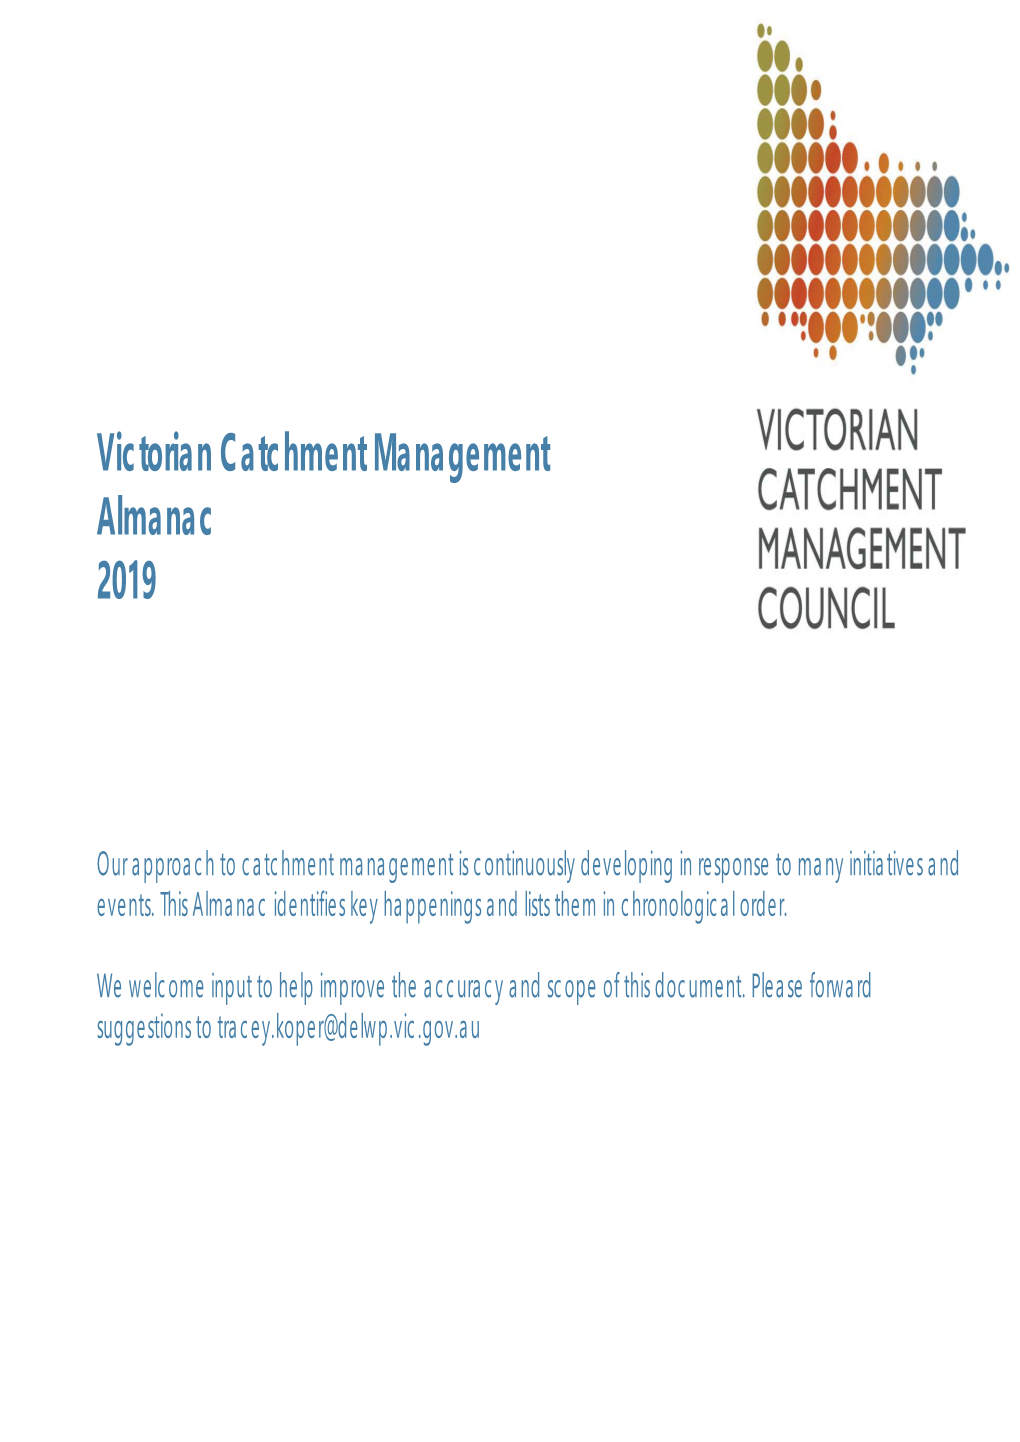 Victorian Catchment Management Almanac 2019